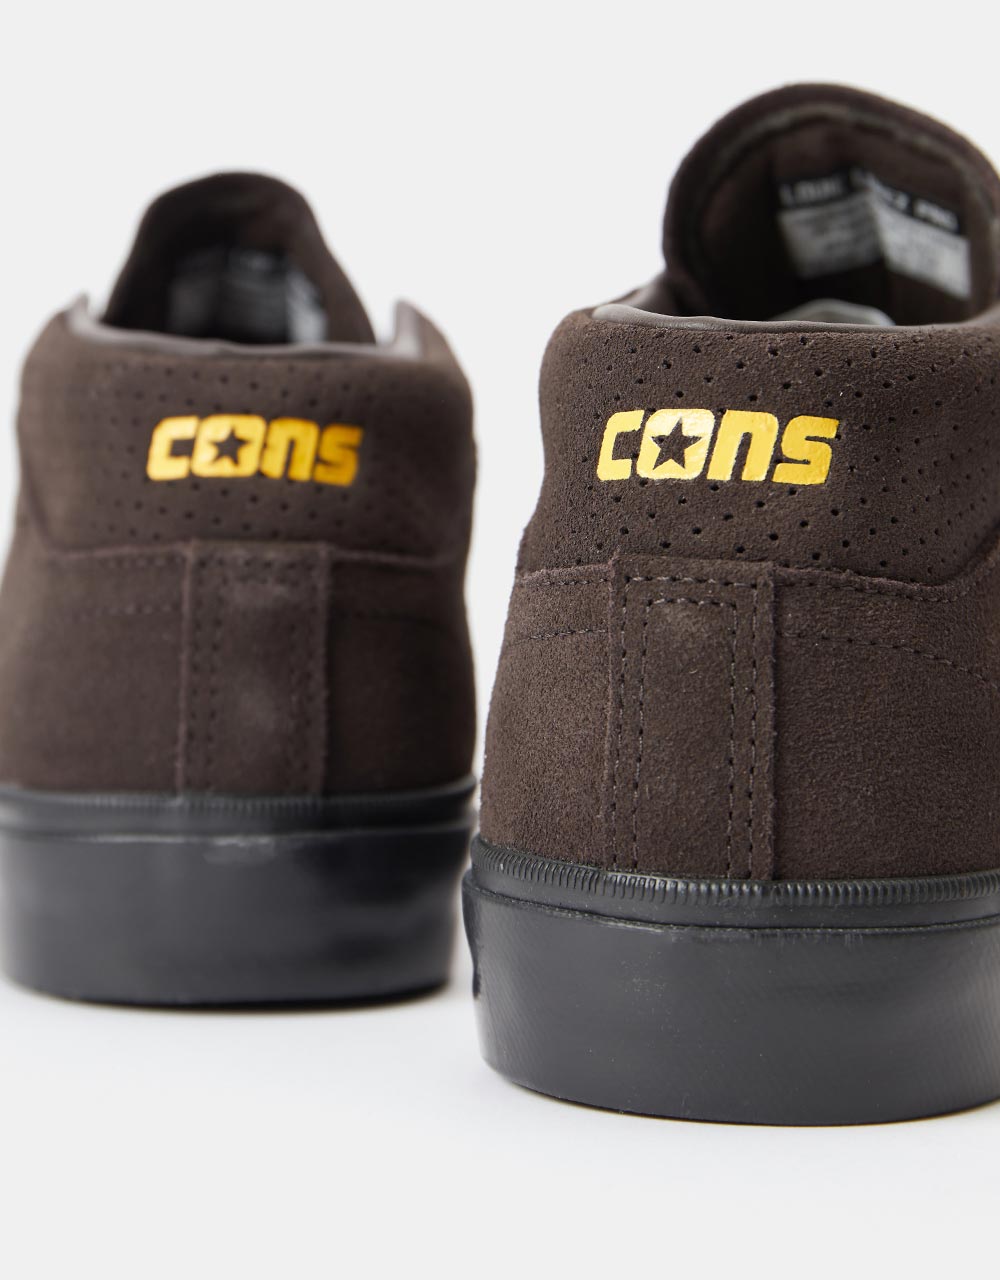 Converse Cons Louie Lopez Pro Mid Skate Shoes - Velvet Brown/Amarillo/Black